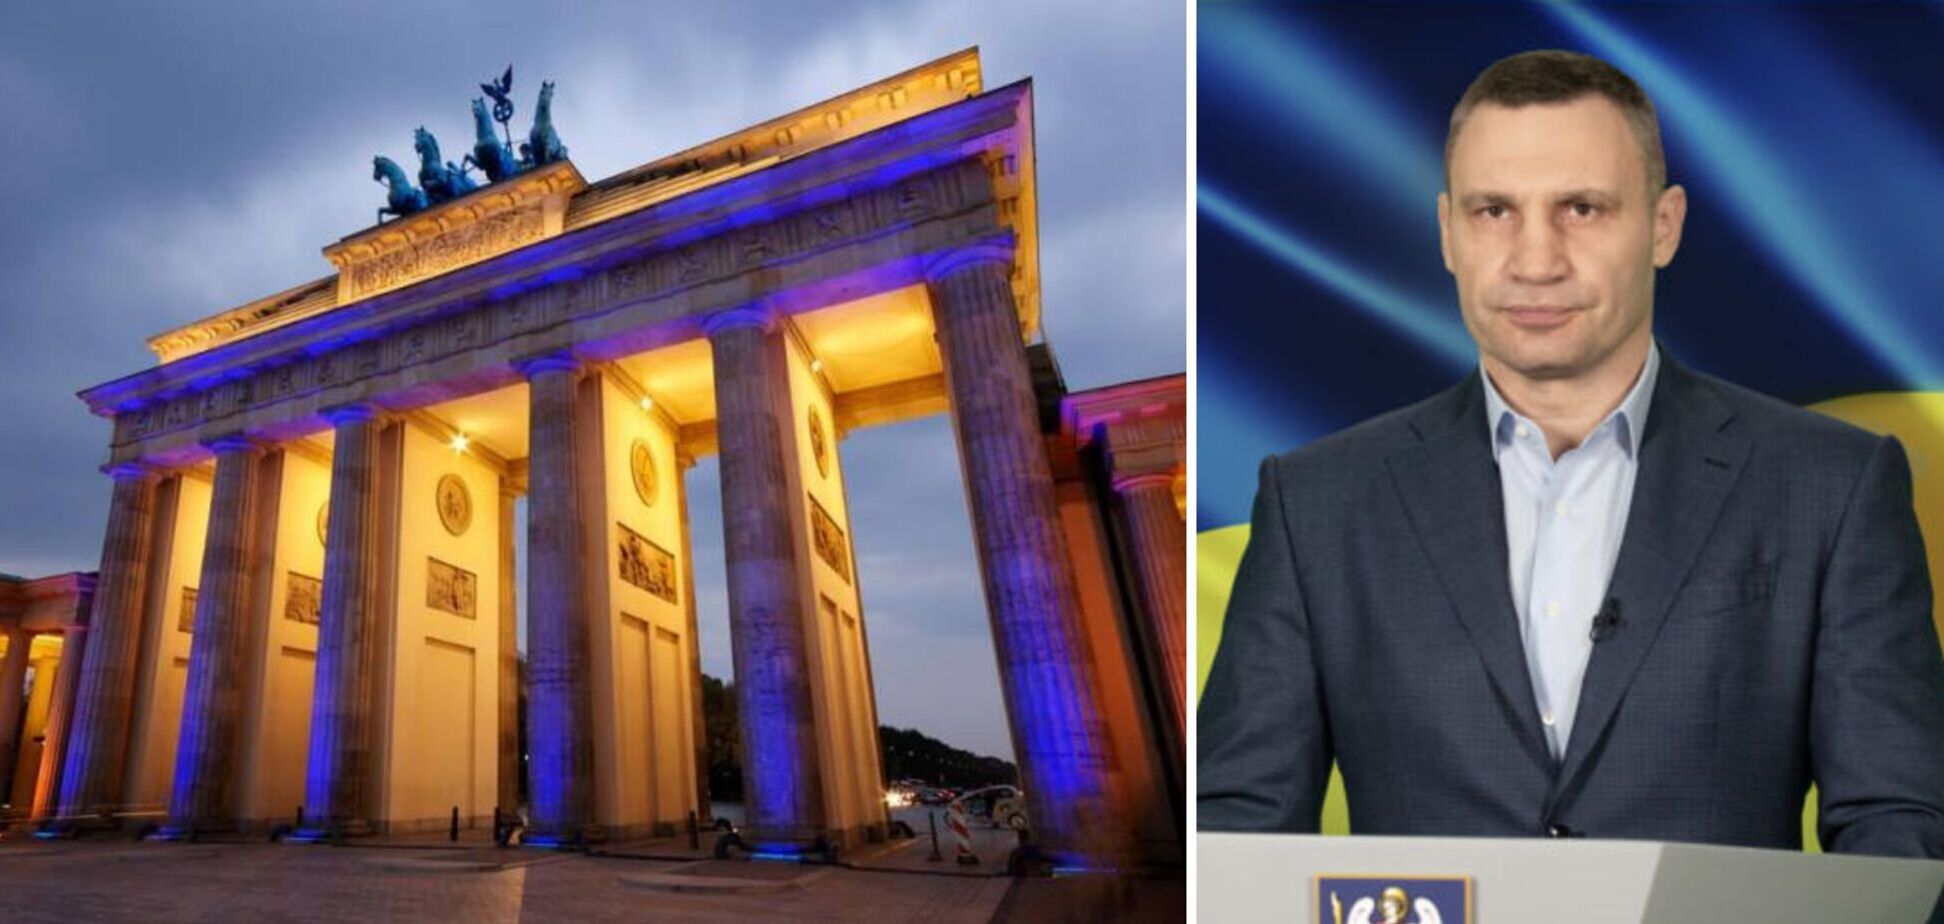 Бранденбурзькі ворота в Берліні підсвітять кольорами прапора України, – Кличко